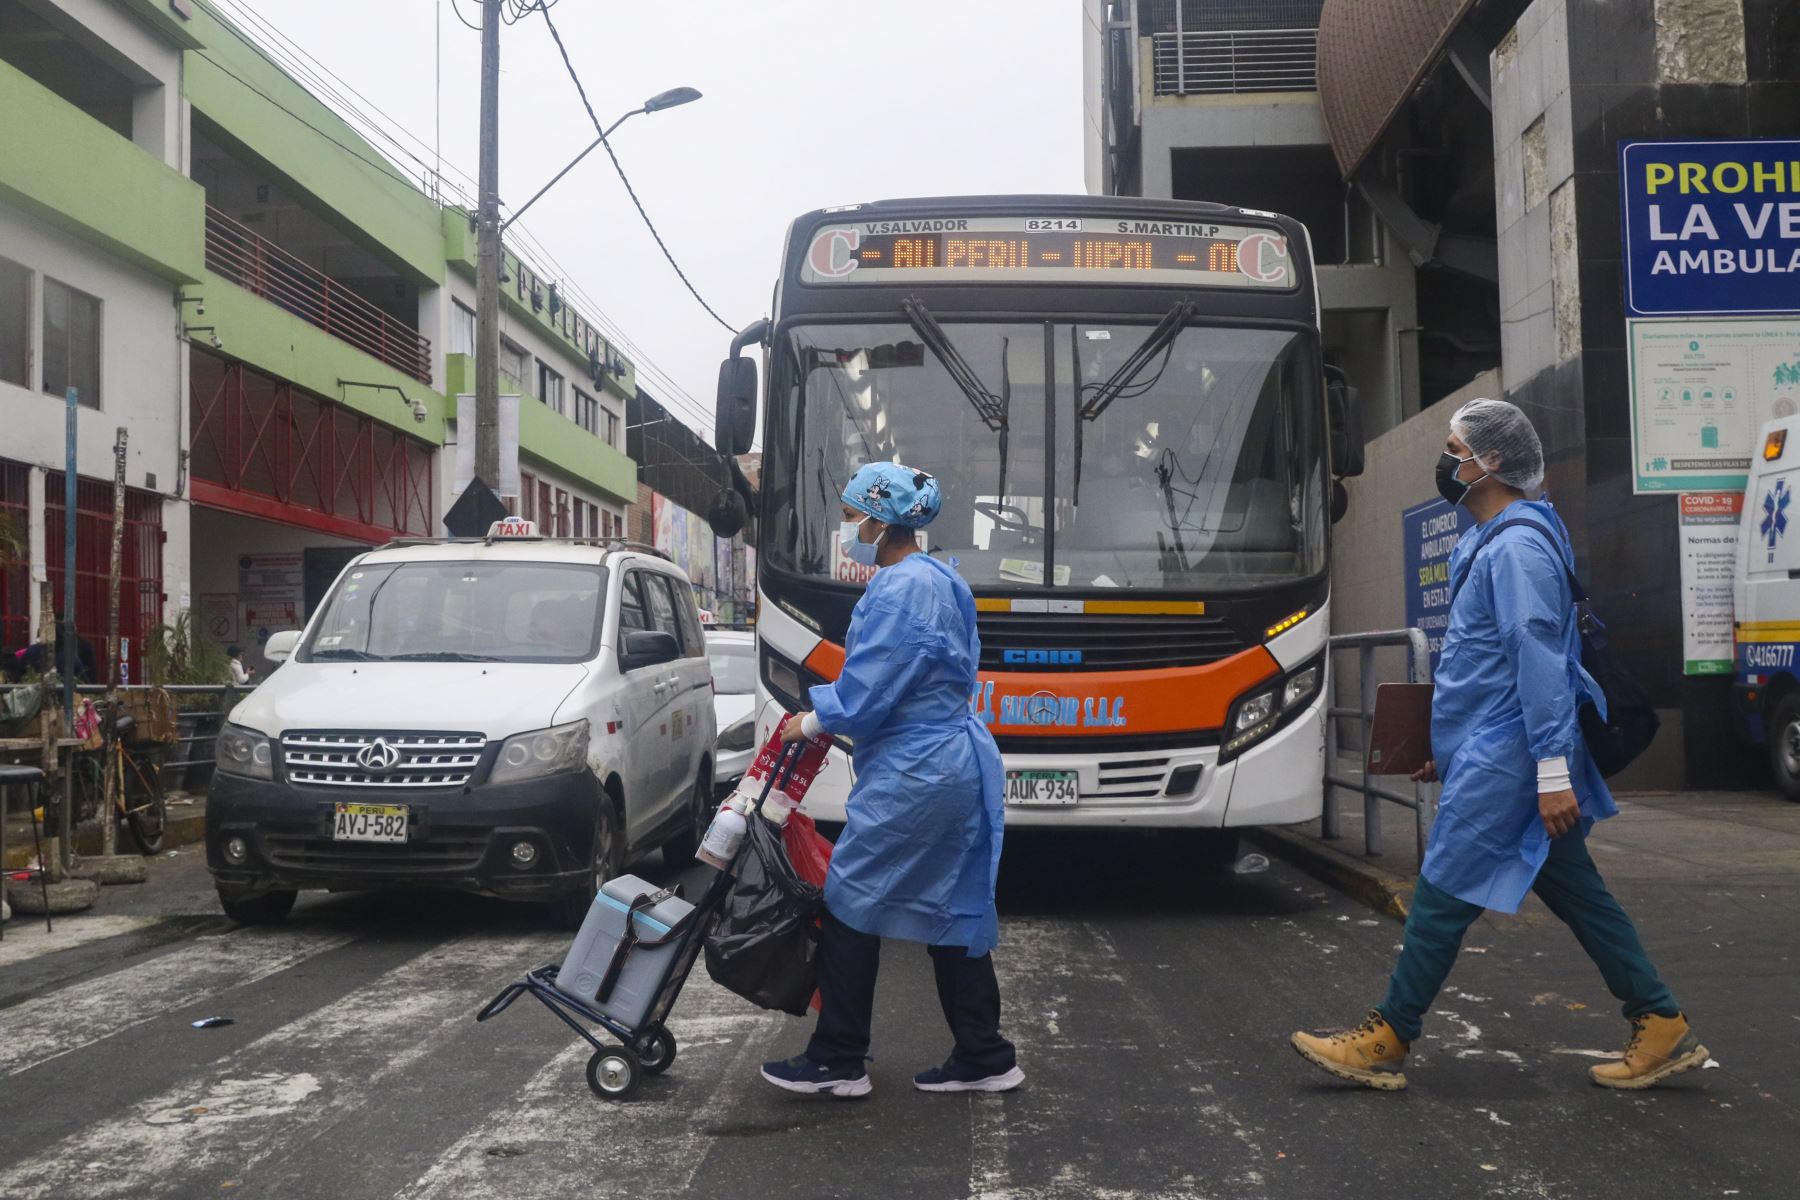 Ministerio de Salud realizó campaña de vacunación contra la Covid 19 y otras enfermedades a los usuarios de la Estación Gamarra de la Línea 1 del Metro de Lima. Foto: ANDINA/Eddy Ramos